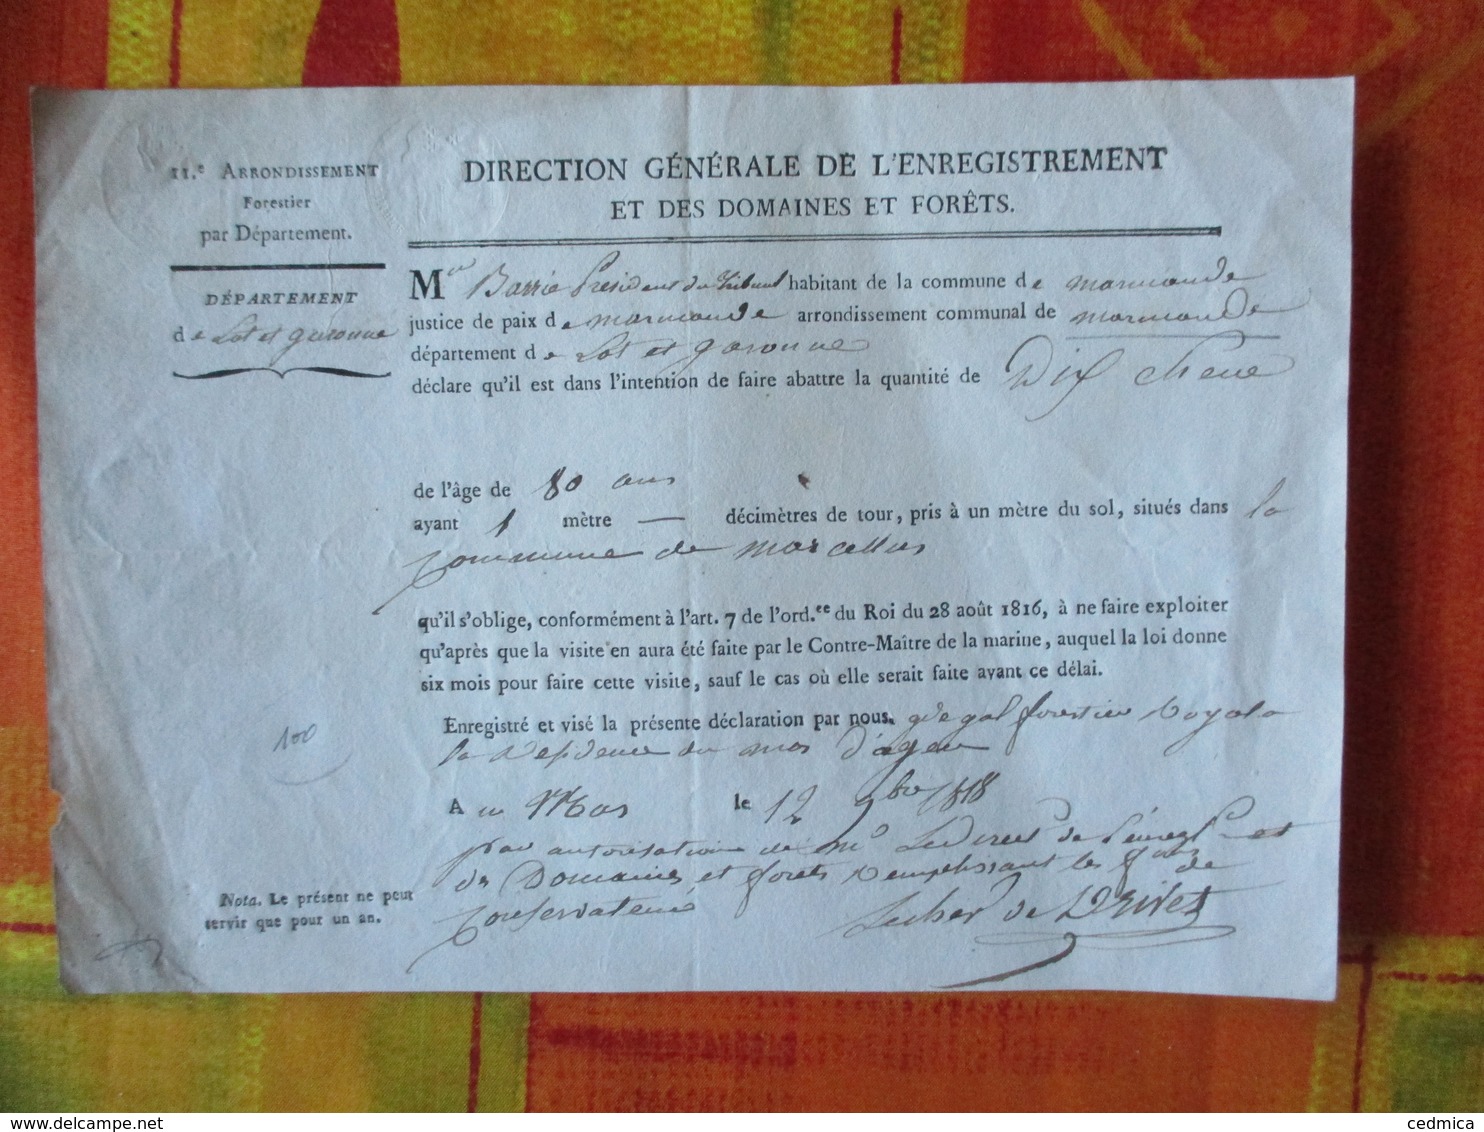 AGEN LE 12 9bre 1818 LE GARDE GENERAL FORESTIER ROYAL DECLARATION DE FAIRE ABATTRE DIX CHENE DE 80 Ans 1 METRE DE DIAMET - Documents Historiques